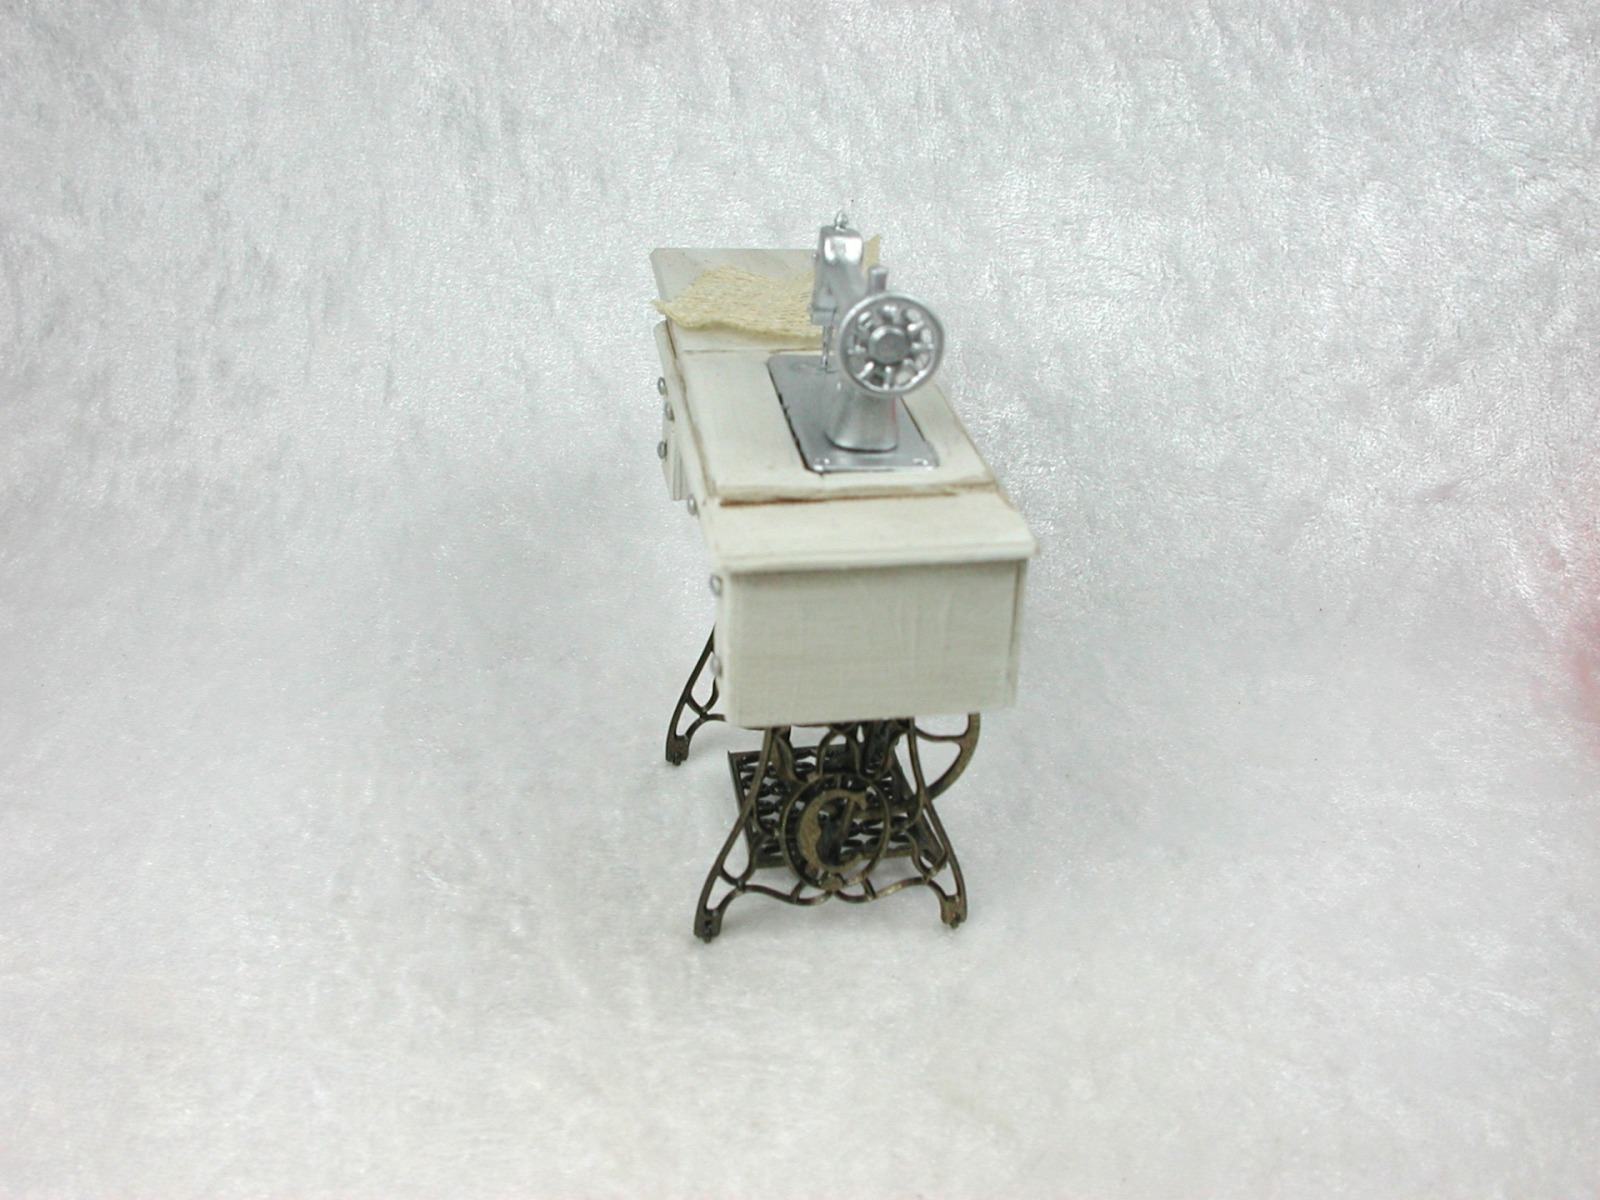 Vintage Nähmaschine, Nähmaschinentisch in Miniatur, 1zu12